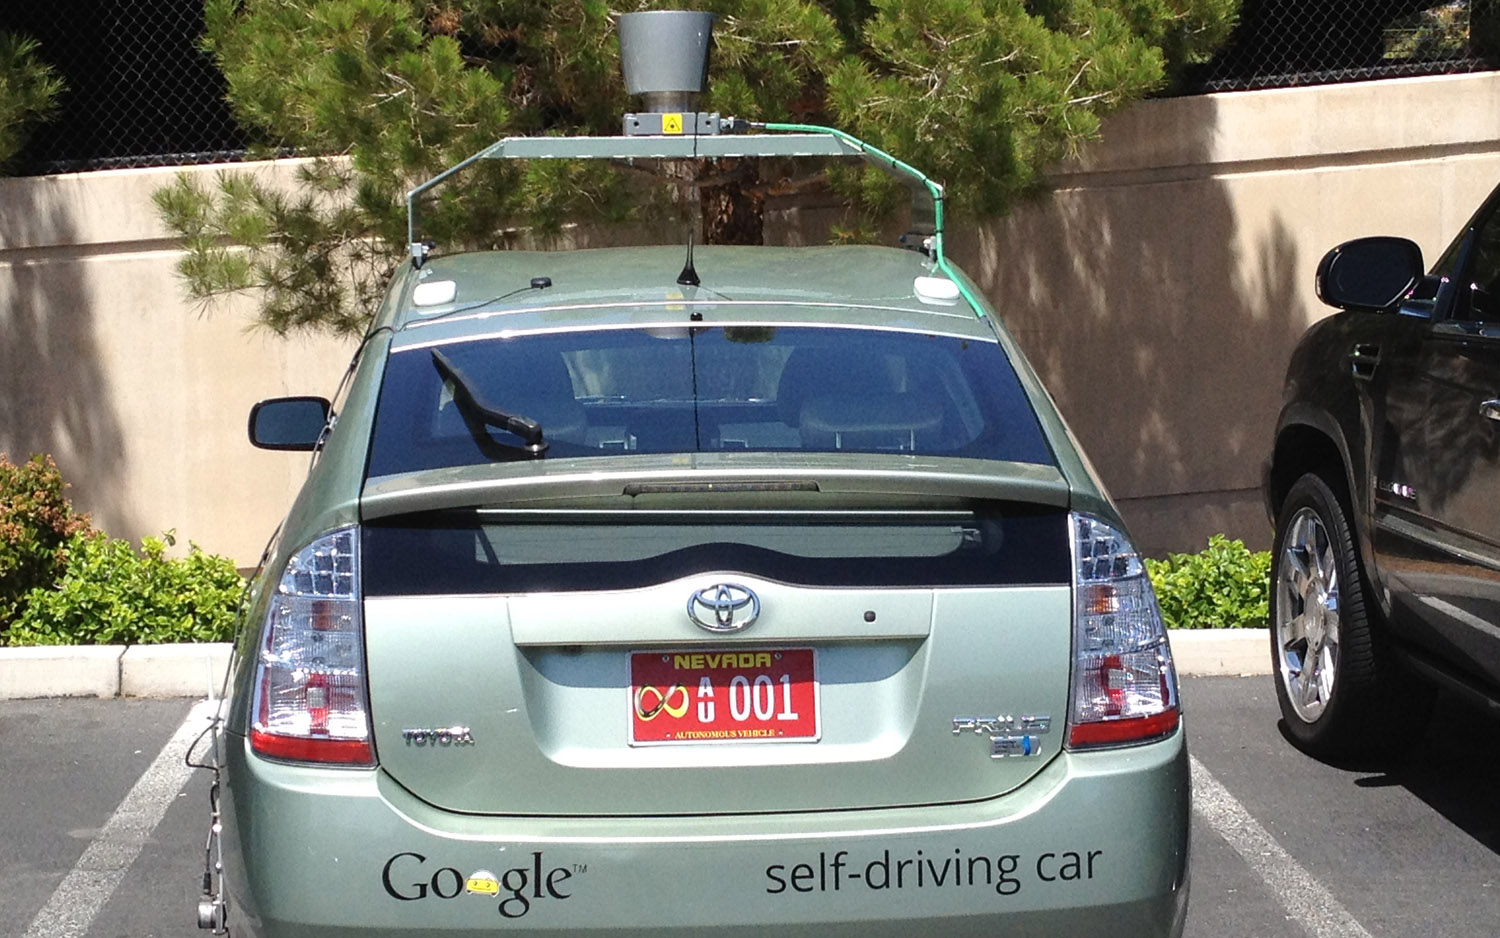 اعتماد جوجل على سيارات تويوتا بريوس لتطوير السيارات ذاتية القيادة كأكبر مساهمة في تطوير الذكاء الاصطناعي